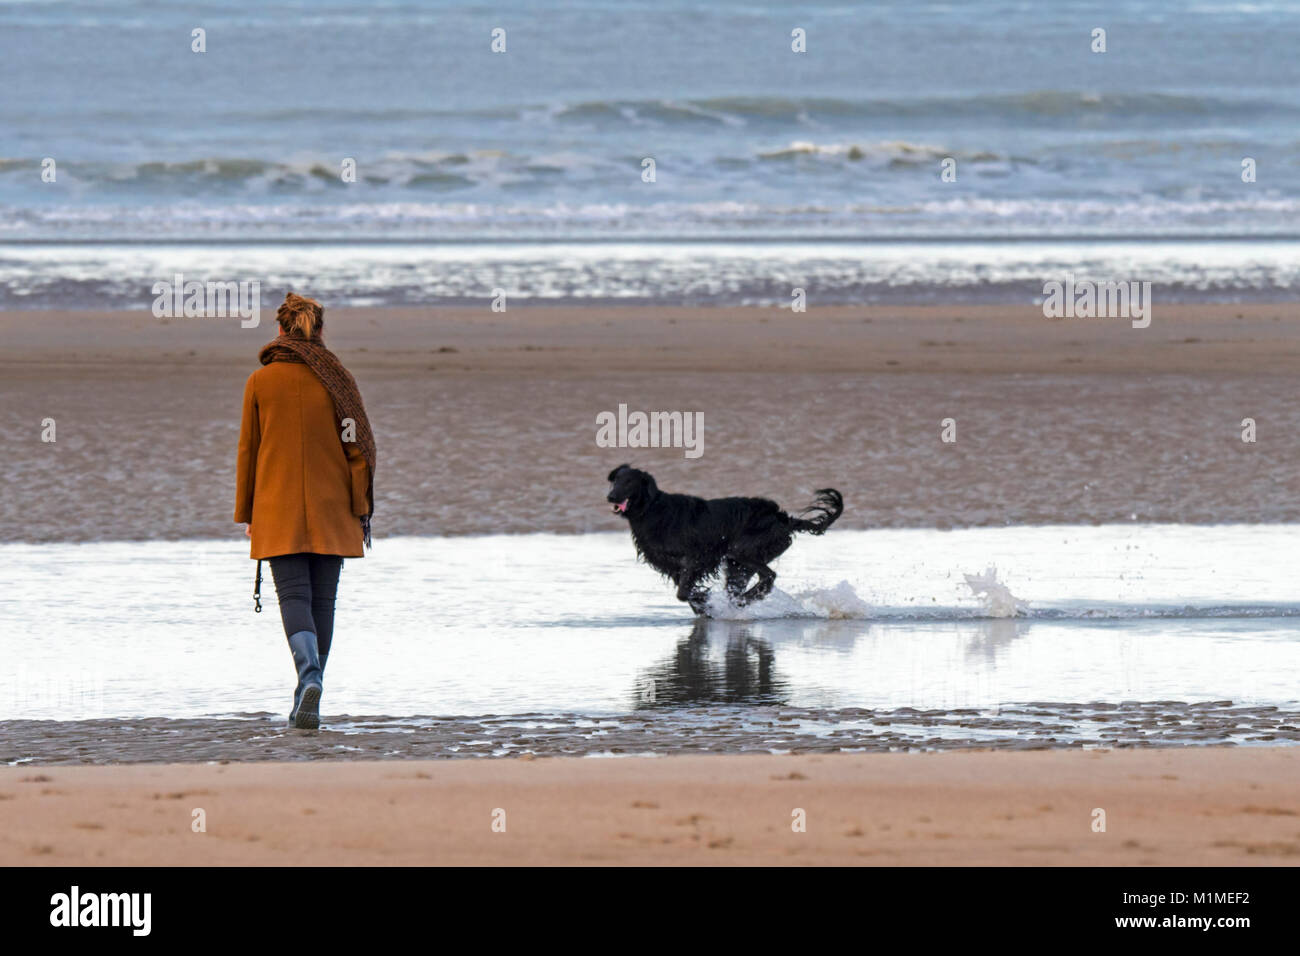 Einsame Frau Wandern auf einsamen Sandstrand mit verspielten schwarzen Hund läuft durch das Wasser entlang der Nordseeküste im Winter Stockfoto